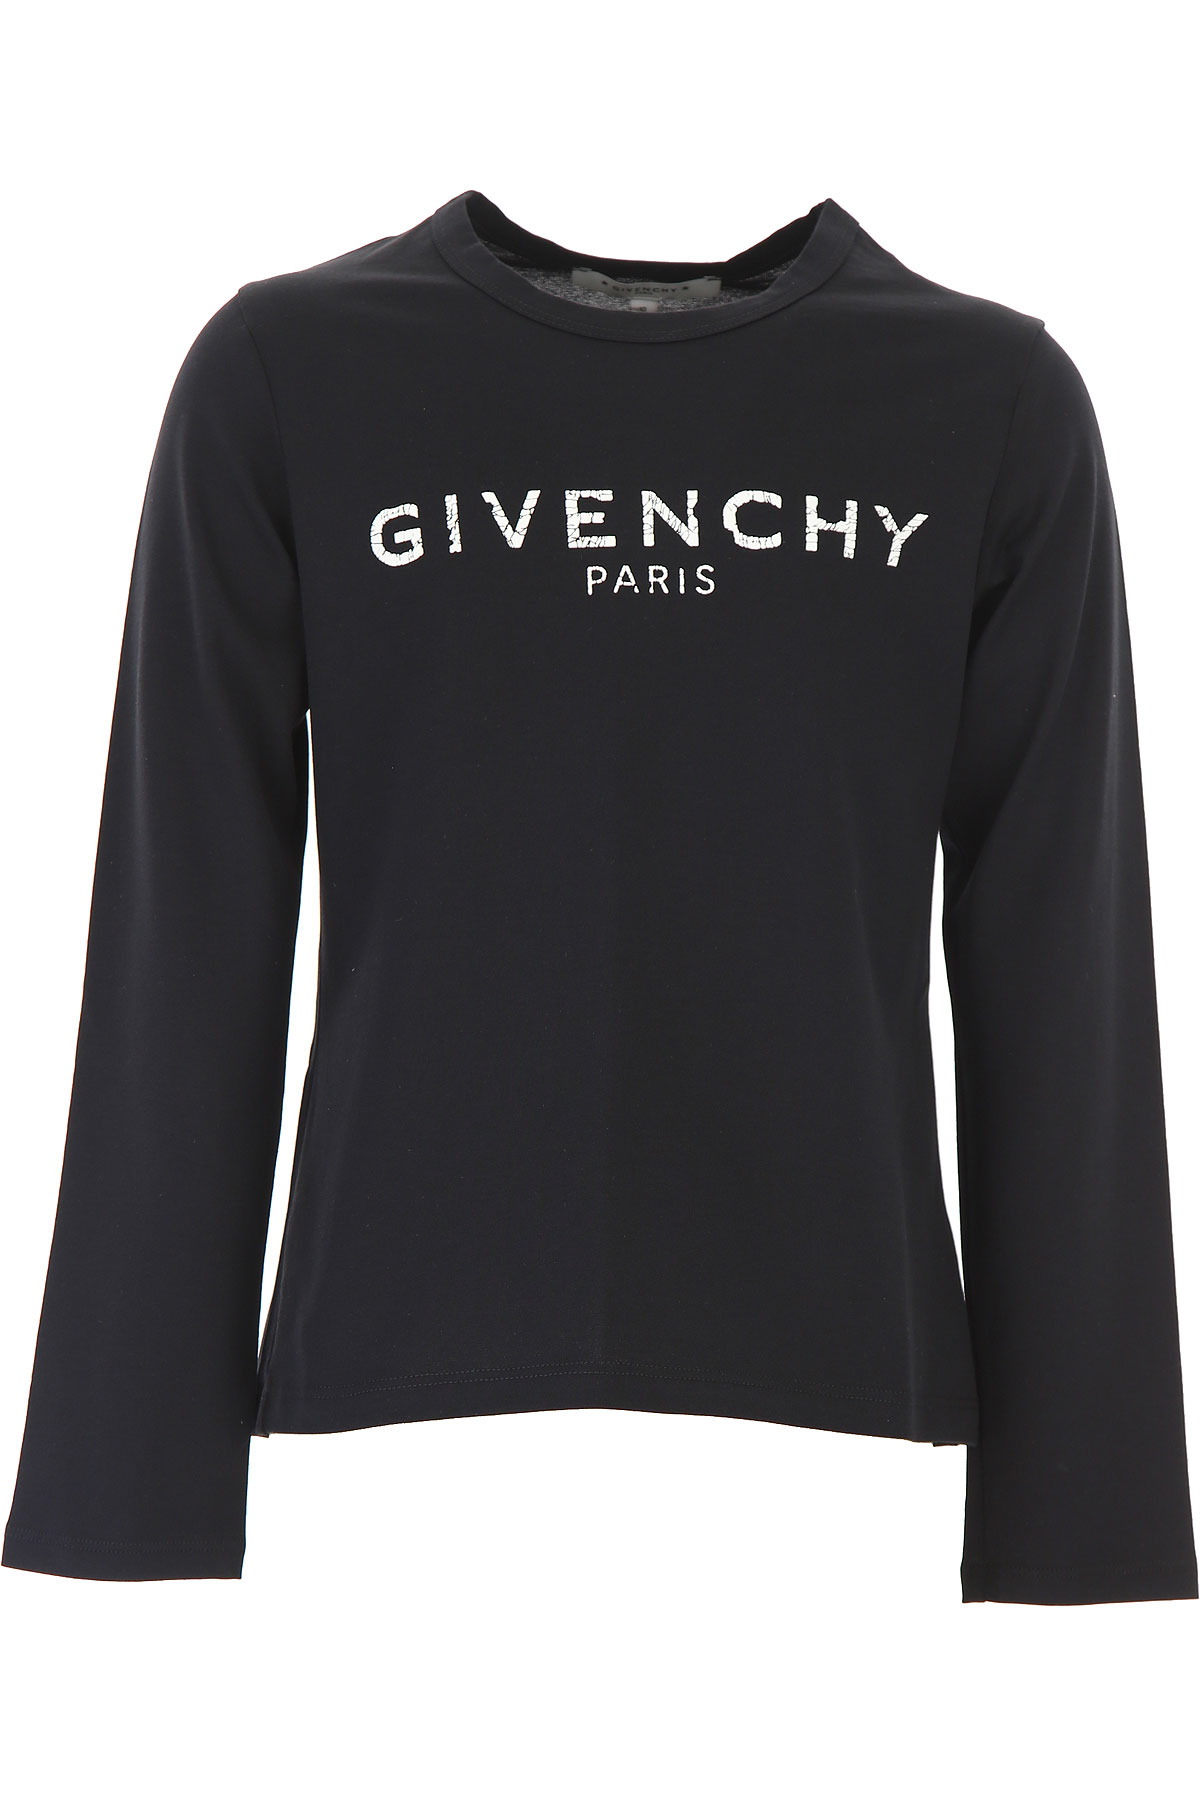 Givenchy Kinder T-Shirt für Mädchen Günstig im Sale, Schwarz, Baumwolle, 2017, 10Y 12Y 4Y 5Y 6Y 8Y